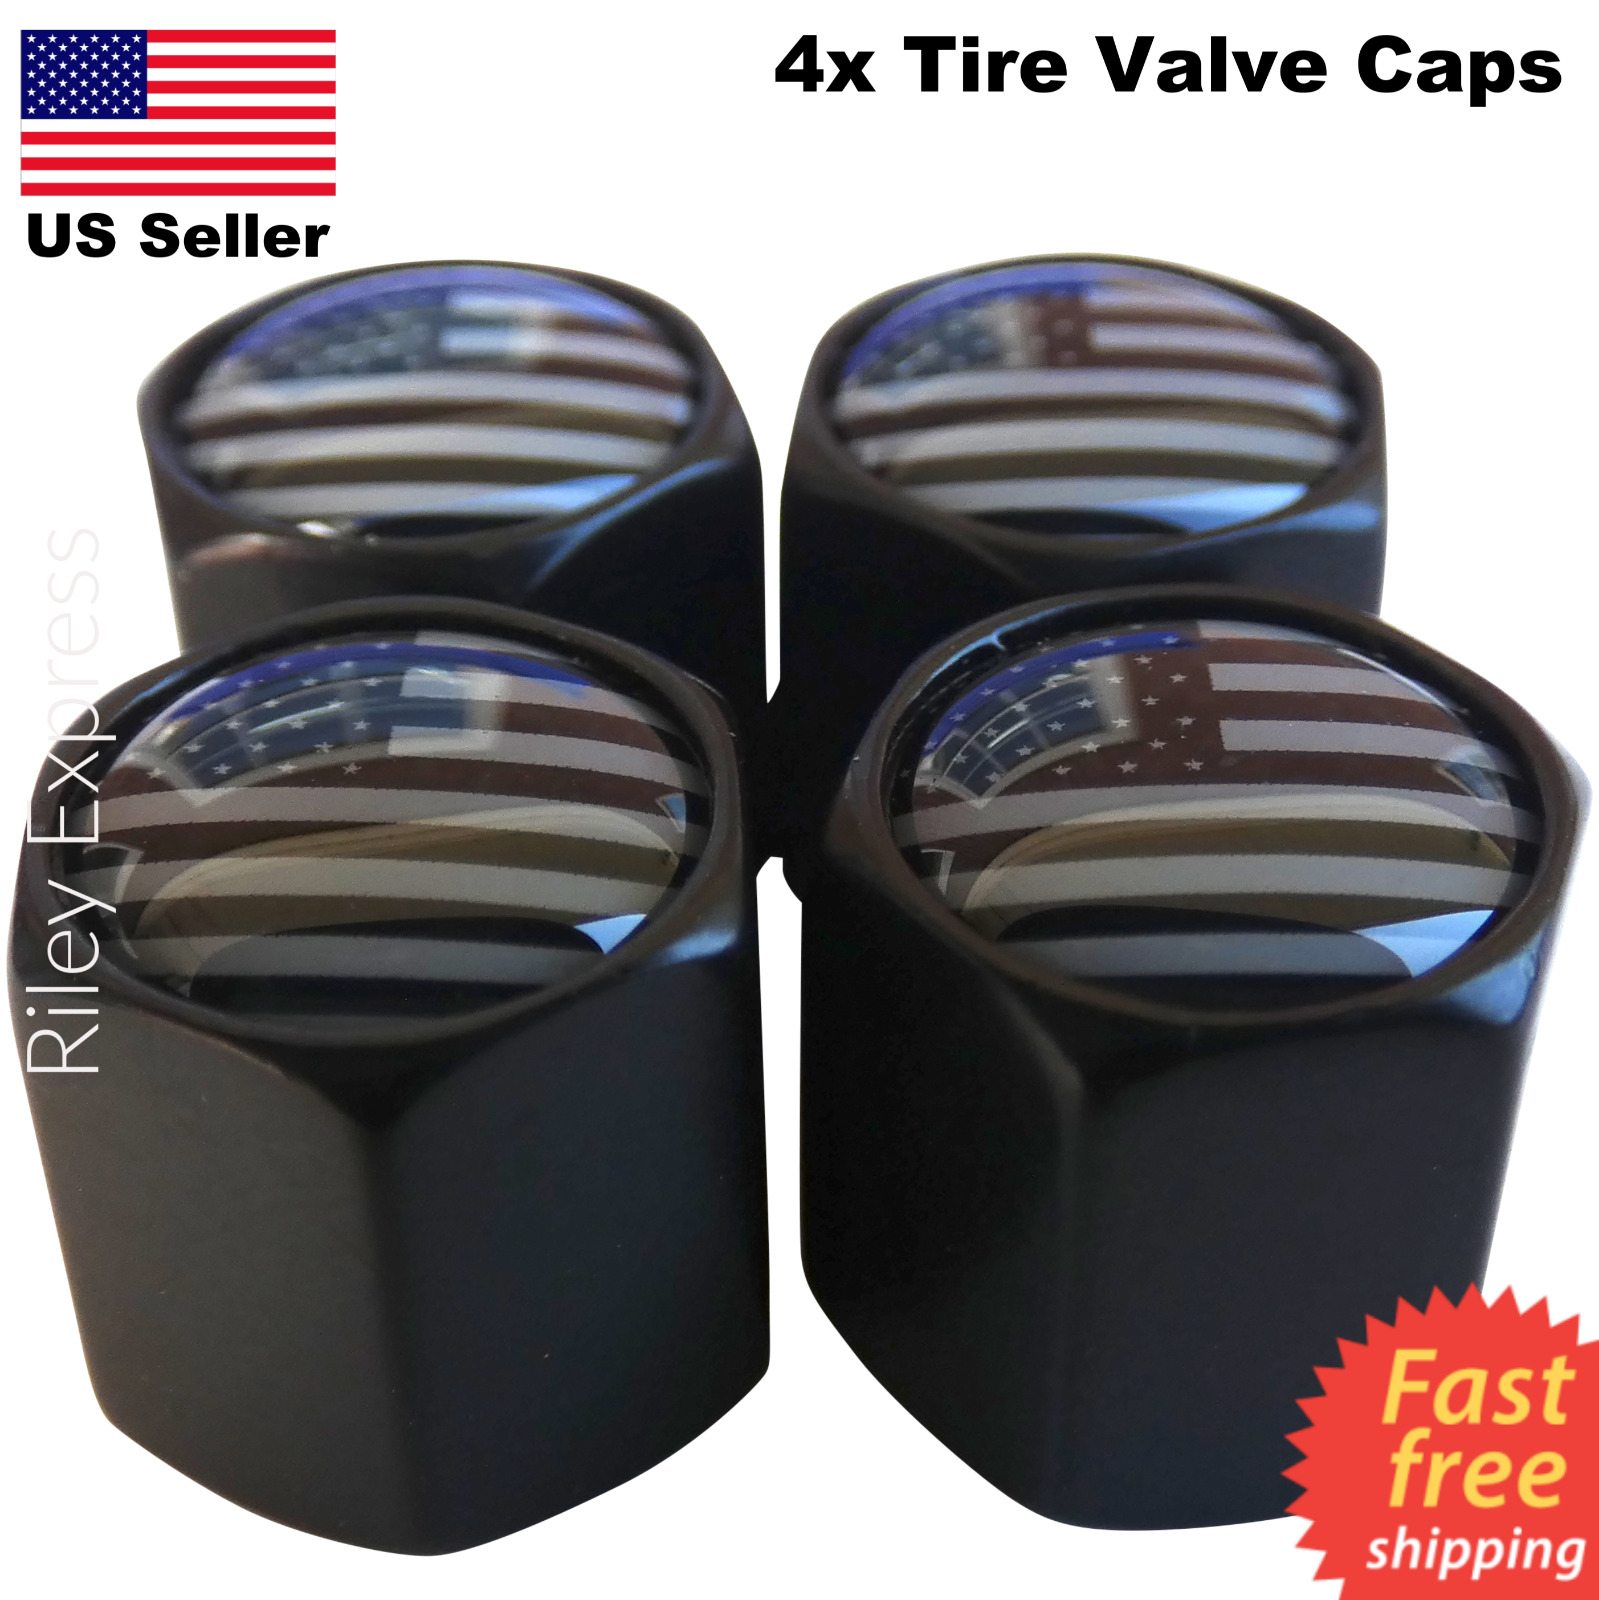 4x Wheel Tire Valve Cap Stem Cover For Car, Bike, Trucks Subdued American Flag